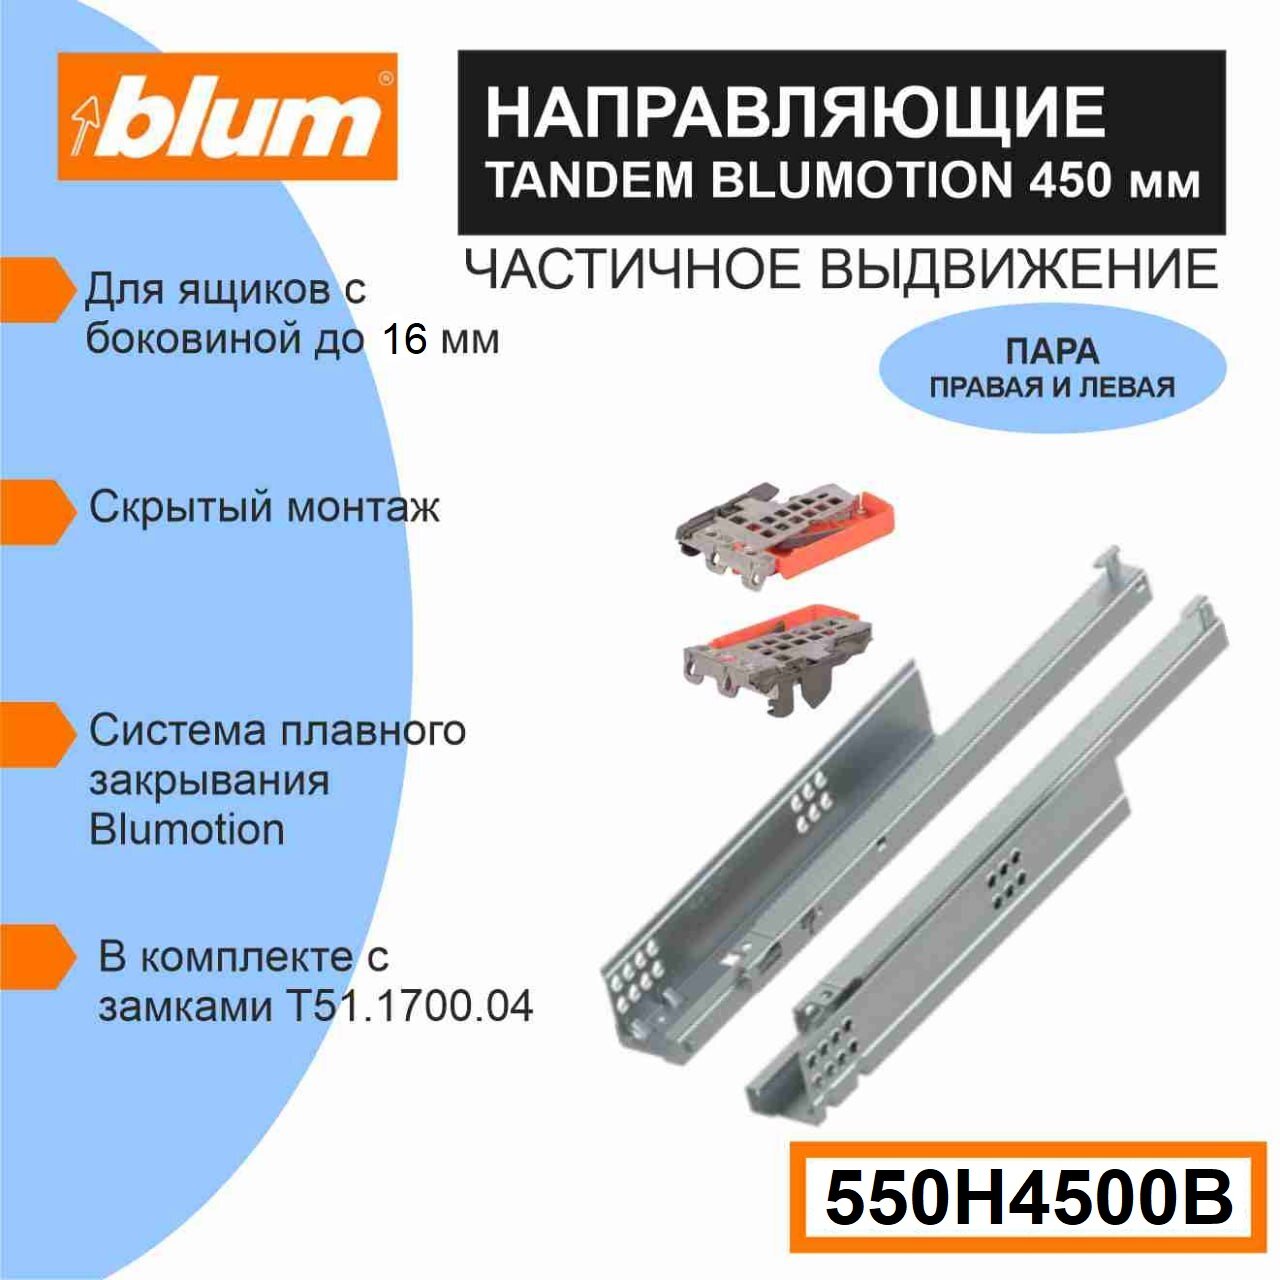 Направляющие скрытого монтажа BLUM TANDEM 550H4500B для ящиков с боковиной до 16 мм 30кг комплект